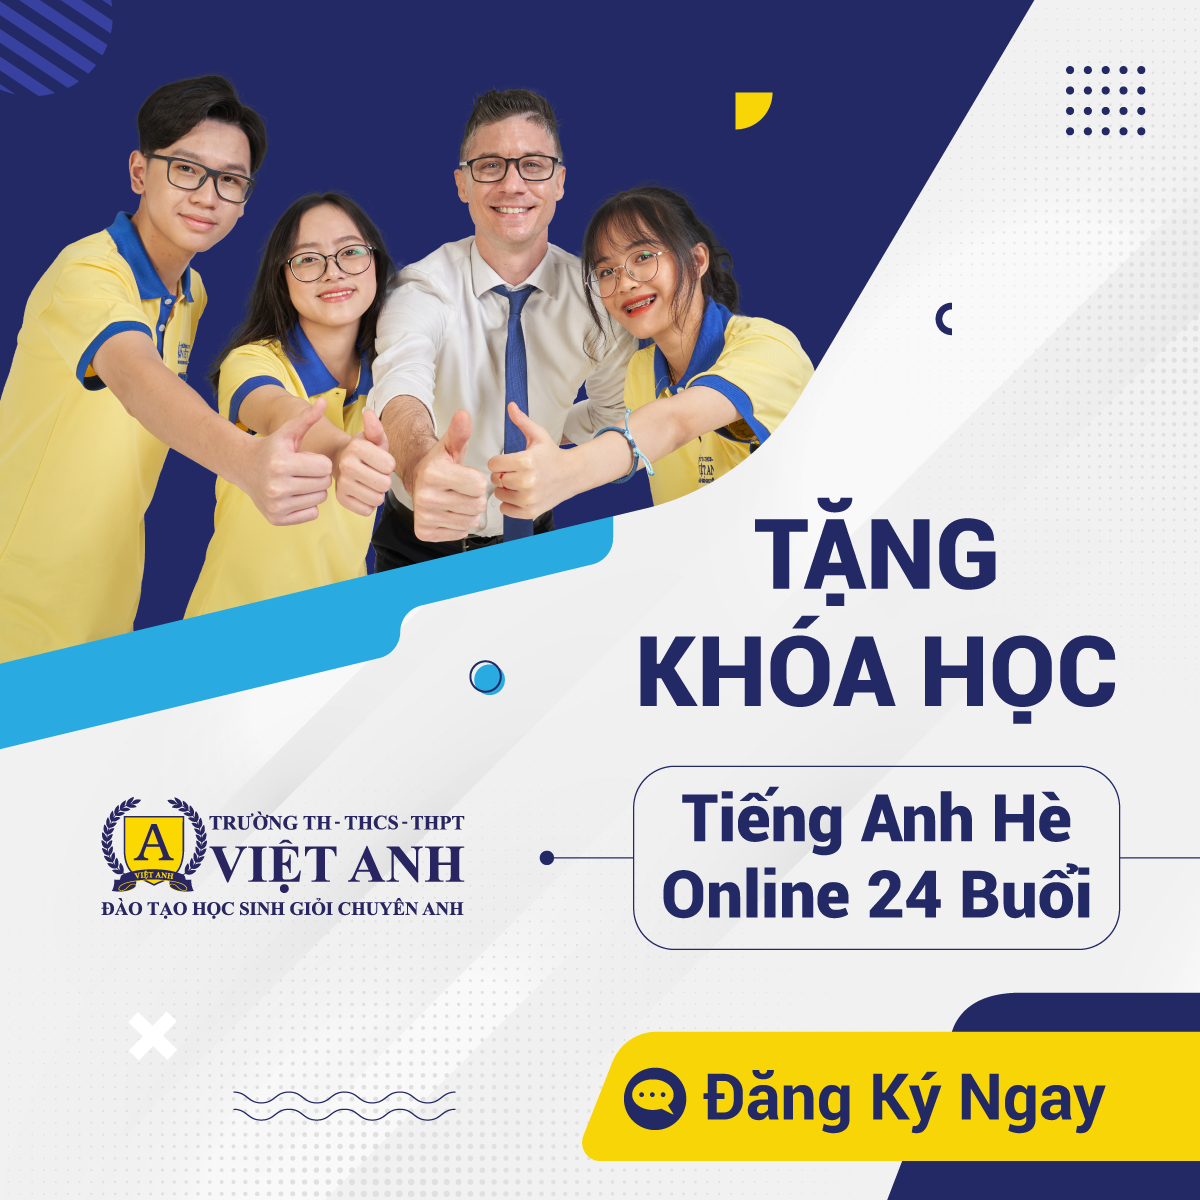 Trường Tiểu học - THCS - THPT Việt Anh ảnh 1